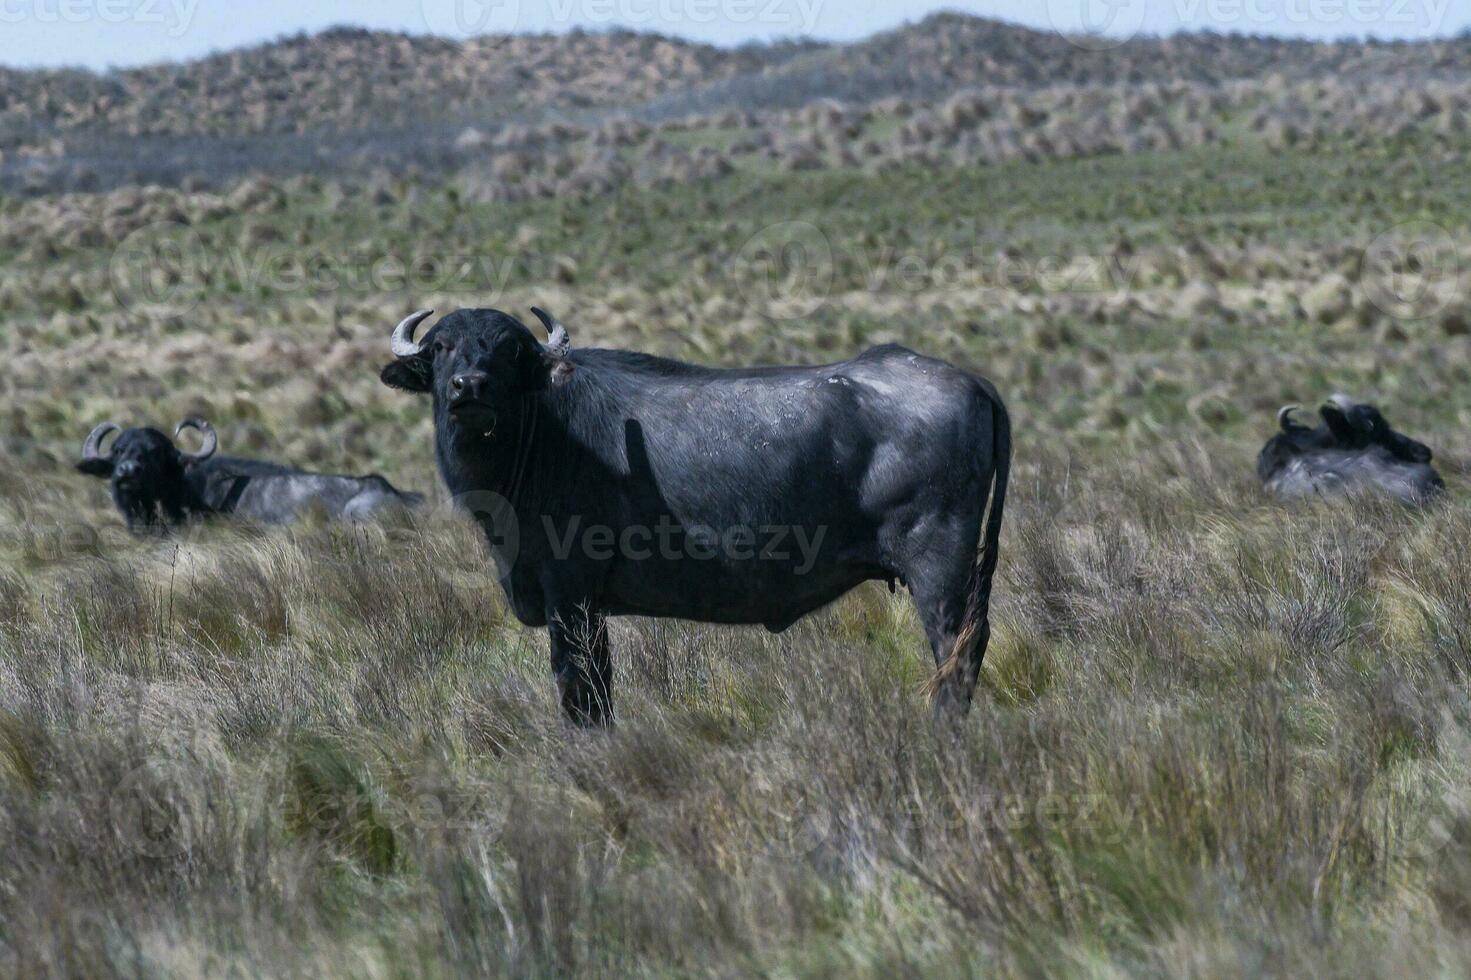 Wasser Büffel, Bubalus Bubalis, Spezies eingeführt im Argentinien, la Pampa Provinz, Patagonien. foto